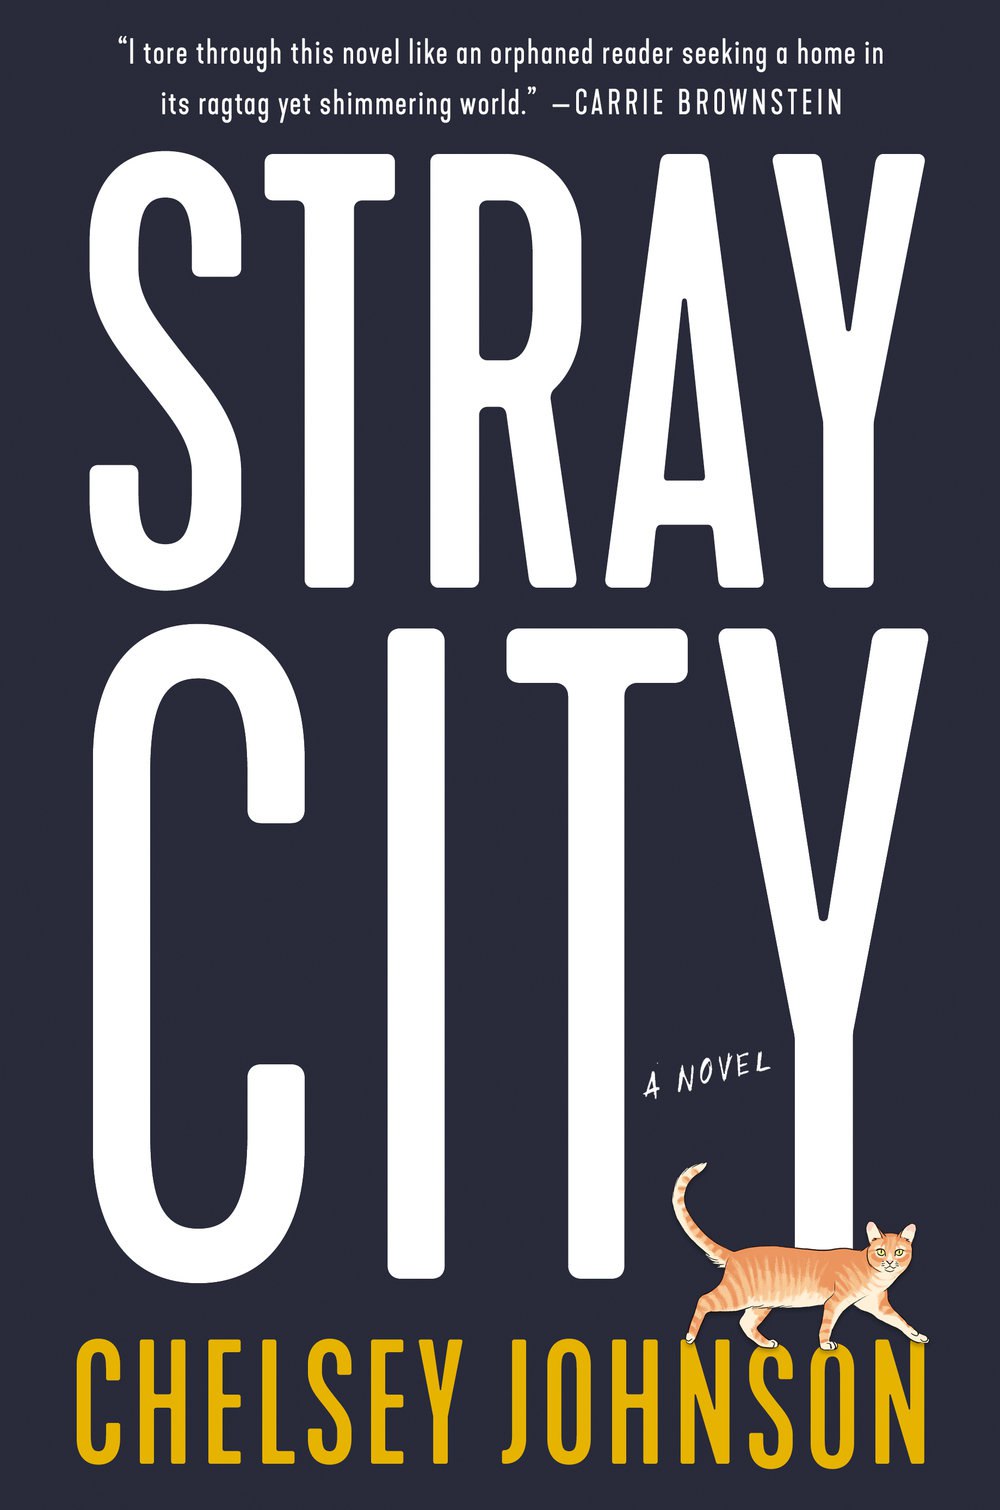 Chelsey Johnson – Stray City